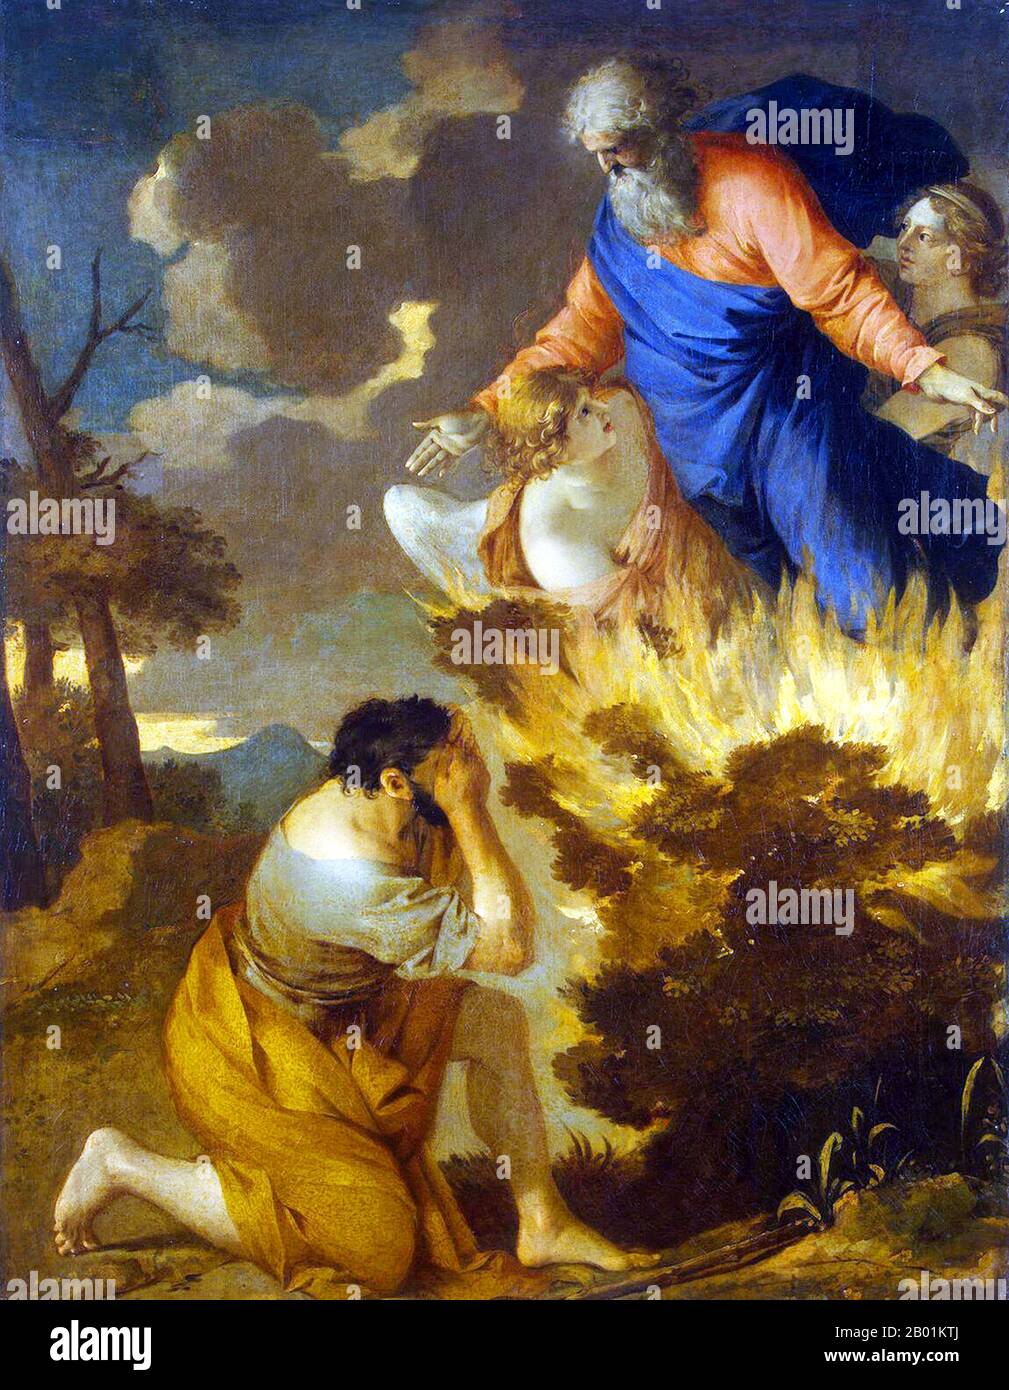 France : 'Moïse et le Bush brûlant'. Peinture à l'huile sur toile de Sébastien Bourdon (2 février 1616 – 8 mai 1671), milieu du 17e siècle. Le buisson brûlant est un objet décrit par le Livre de l'Exode (3:1-21) comme étant situé sur le mont Sinaï ; selon le récit, le buisson était en feu, mais n'a pas été consumé par les flammes, d'où son nom. Dans le récit, le buisson brûlant est l’endroit où Moïse a été nommé par Dieu pour conduire les Israélites hors d’Égypte et en Canaan. Banque D'Images